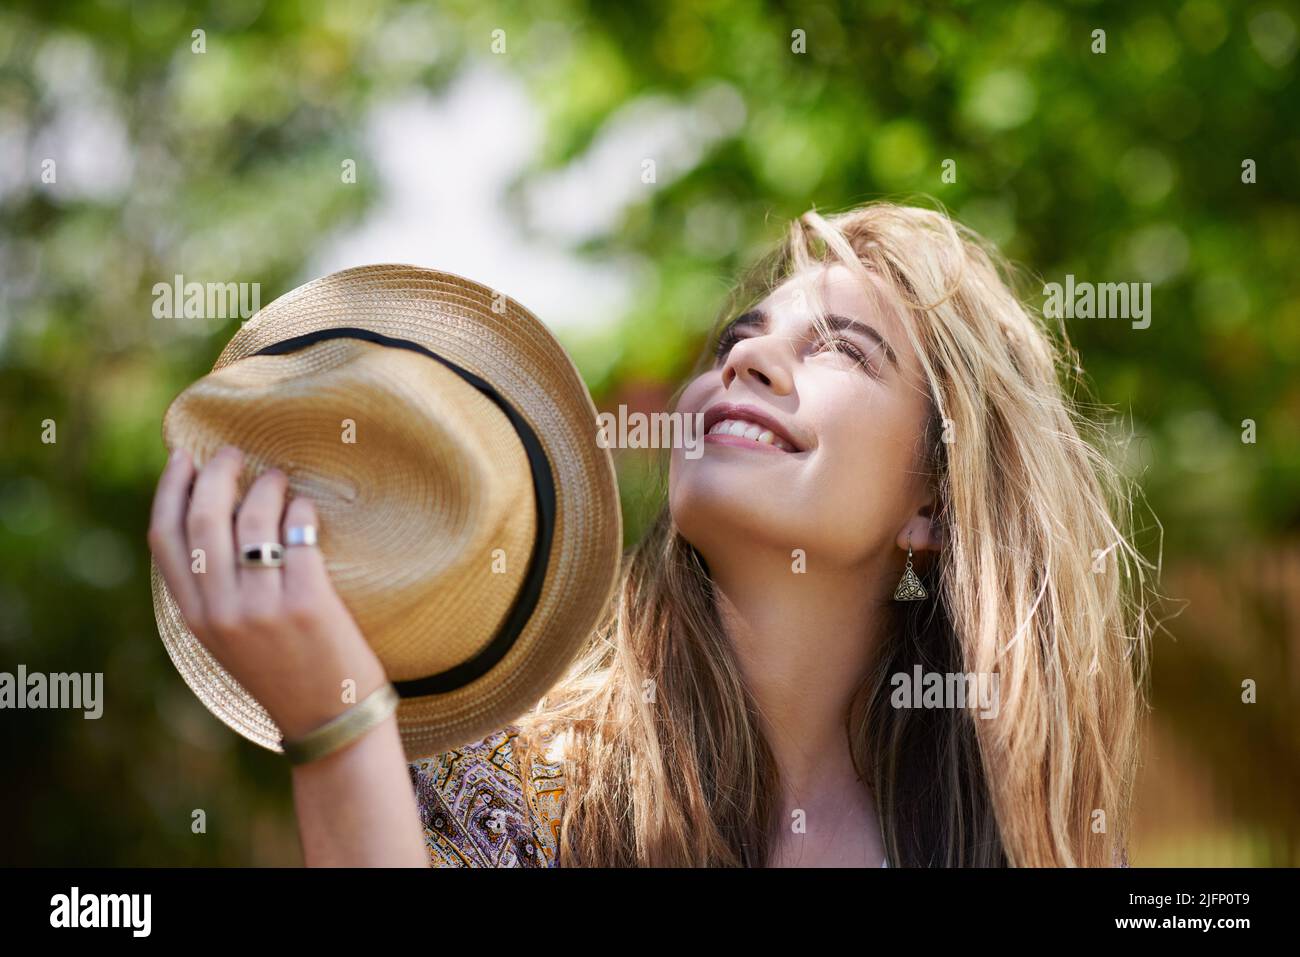 Mère nature, je vous prends mon chapeau. Photo d'une jeune femme branchée qui profite d'une journée dans la nature. Banque D'Images